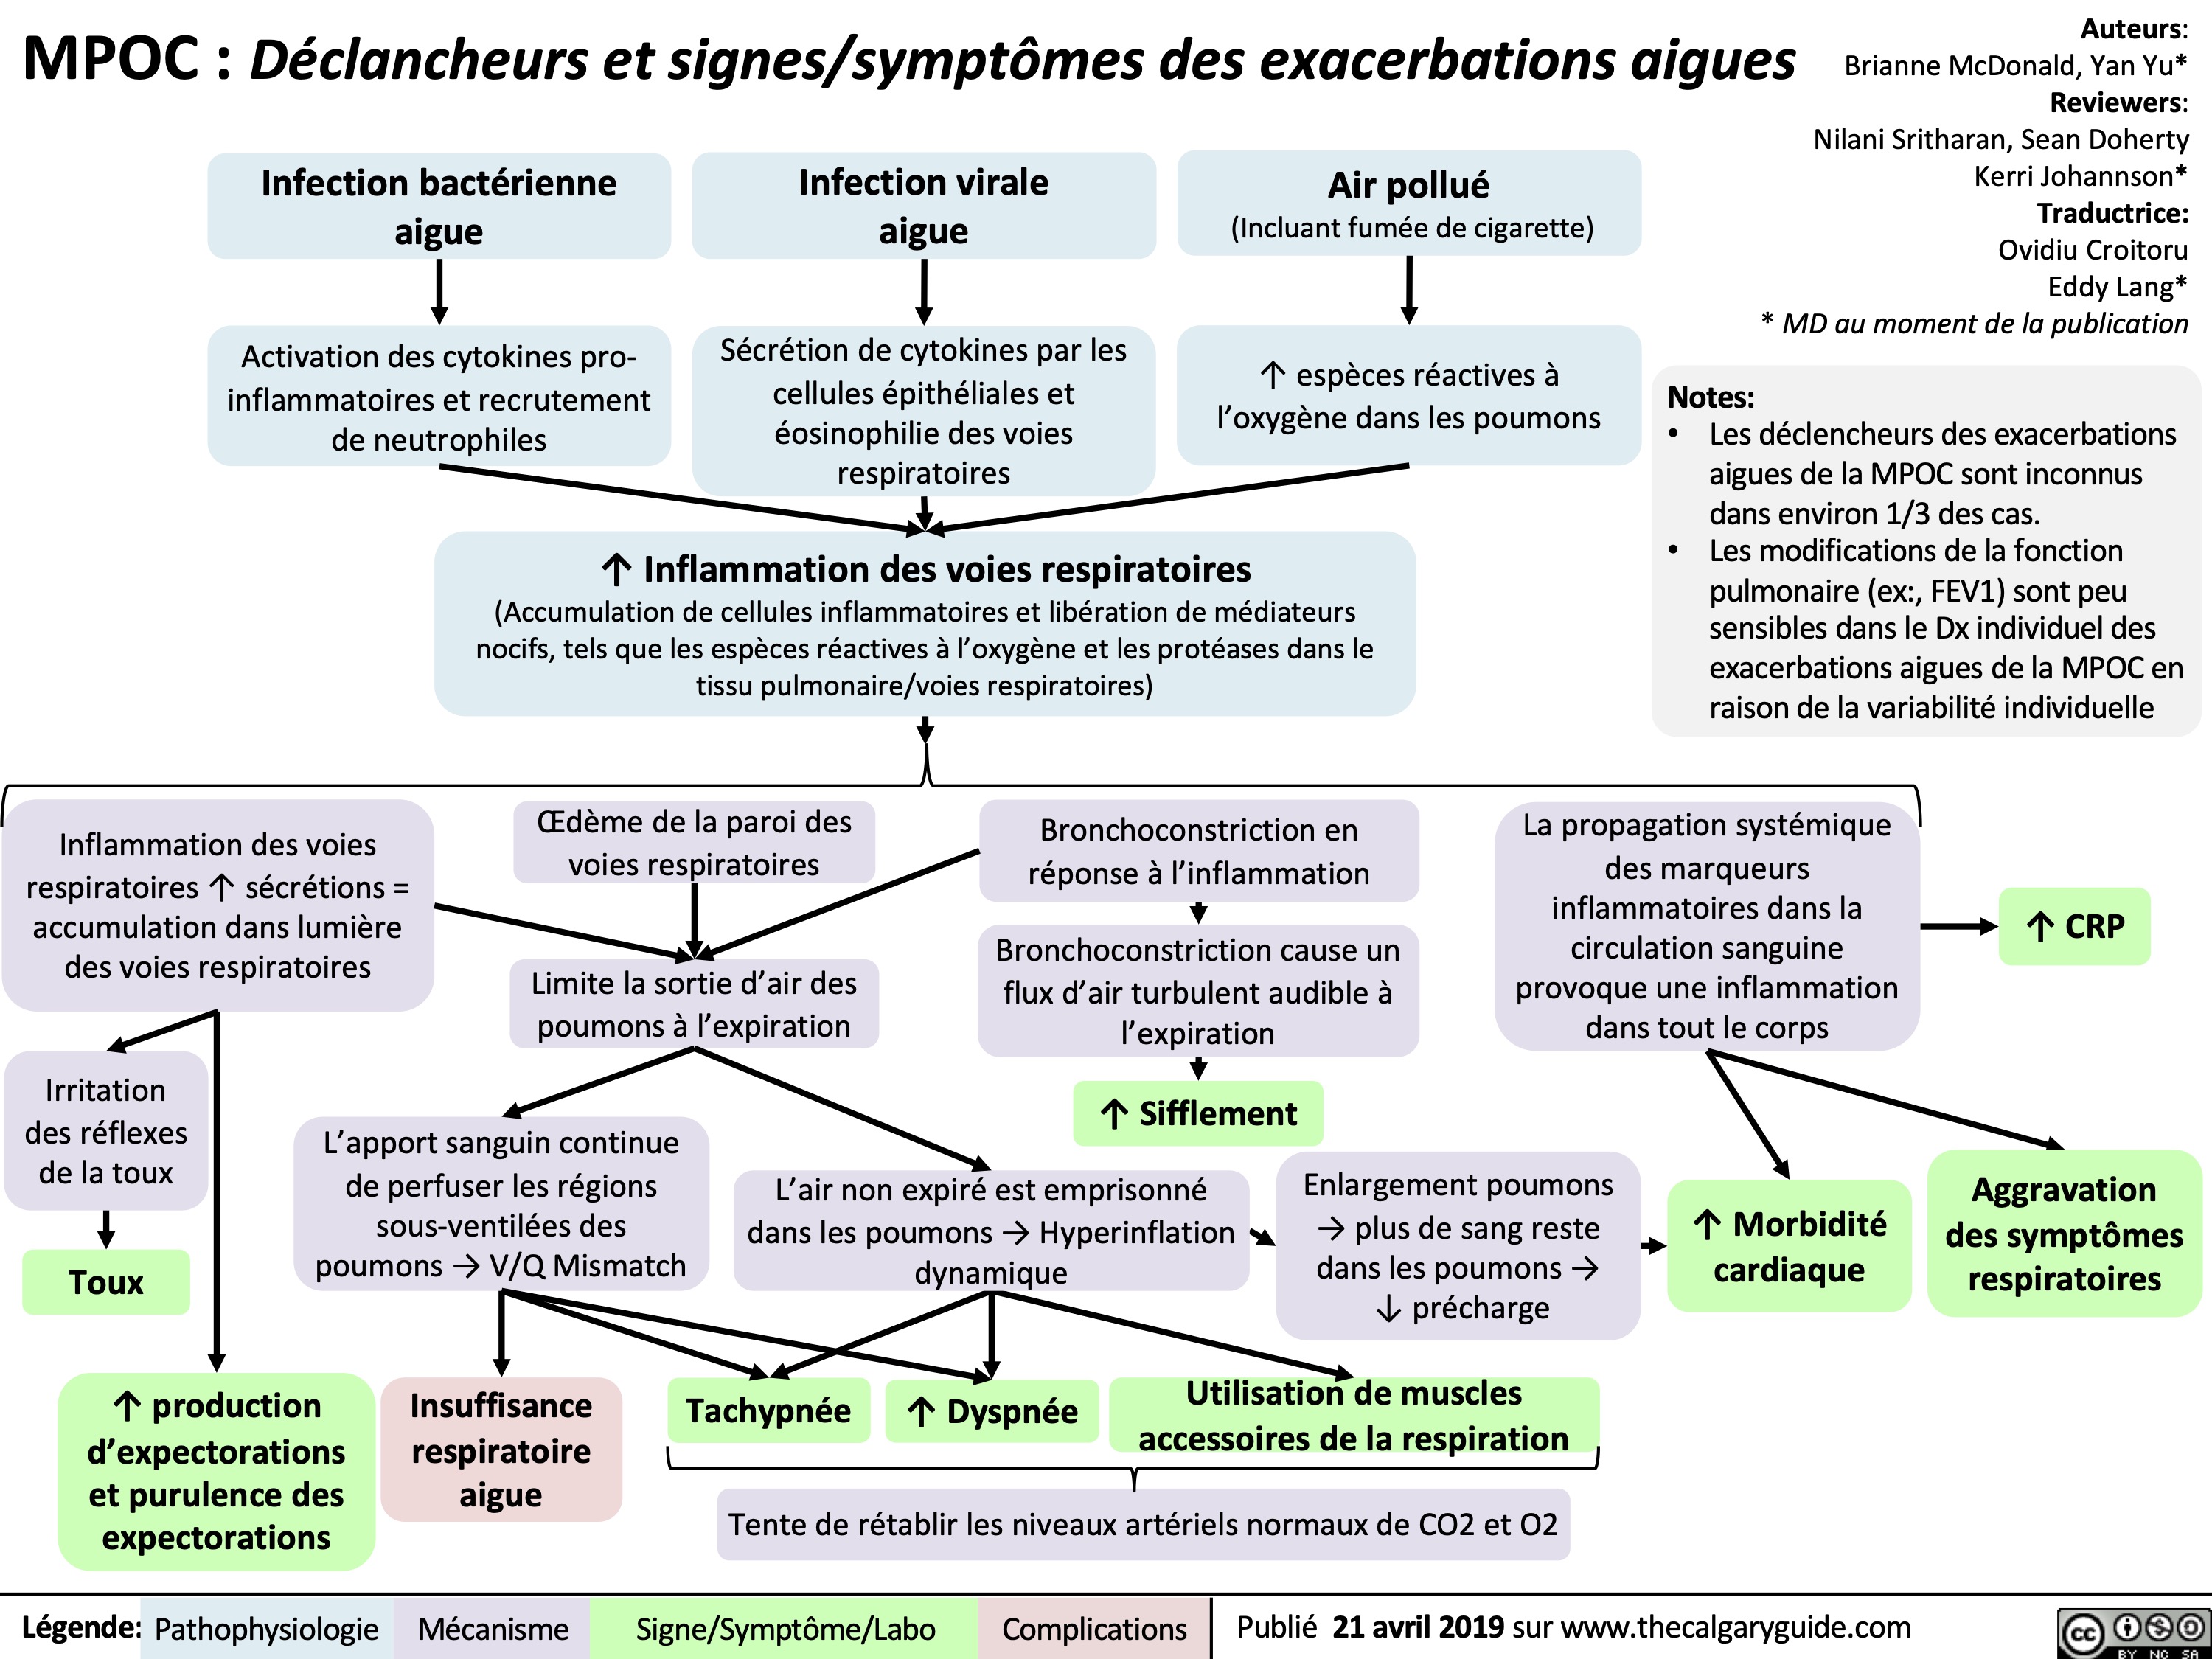 MPOC Déclancheurs et signes:symptômes des exacerbations aigues